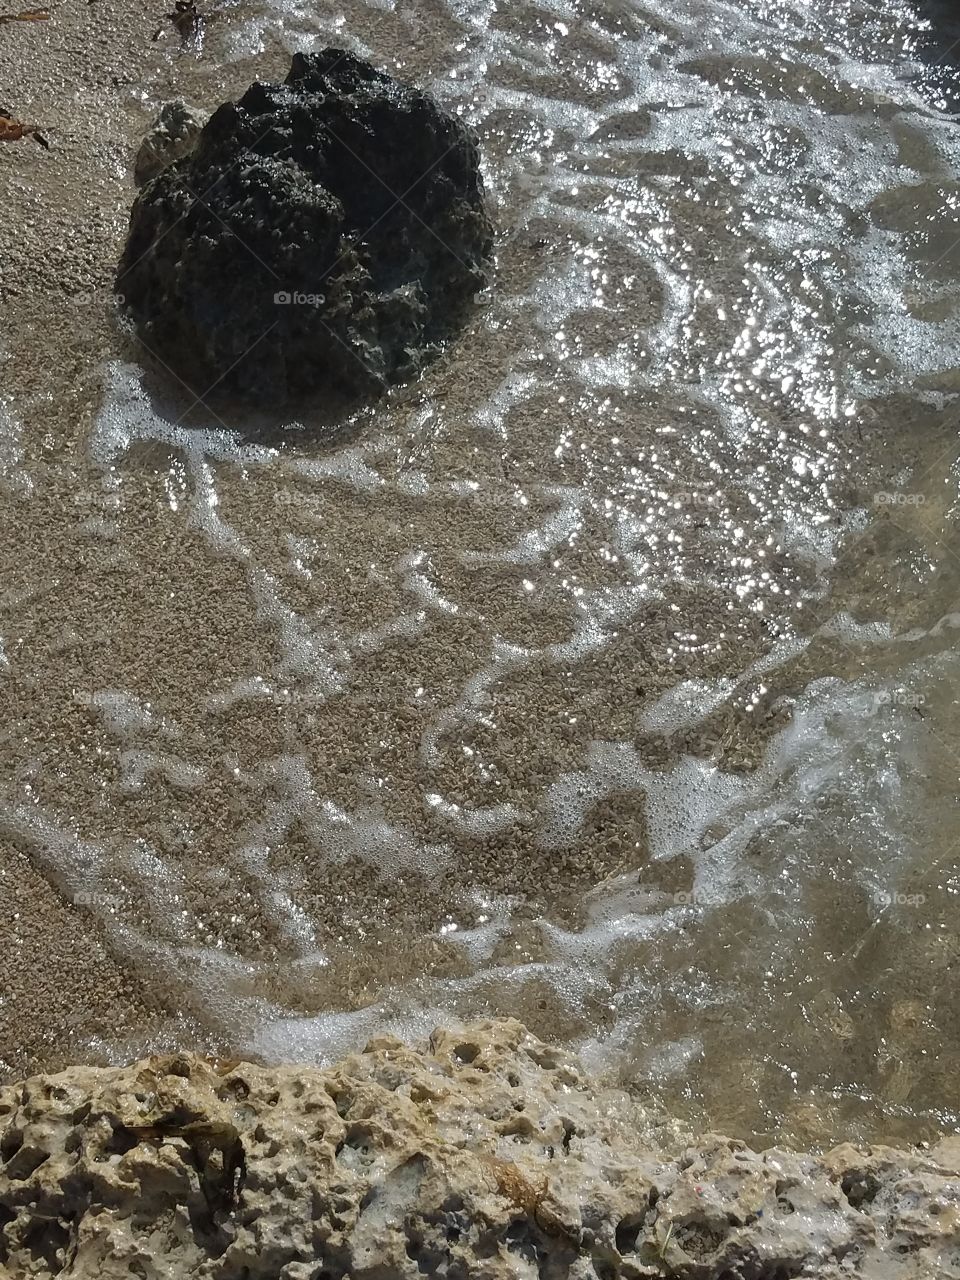 warm sand,clear water under a warm sun